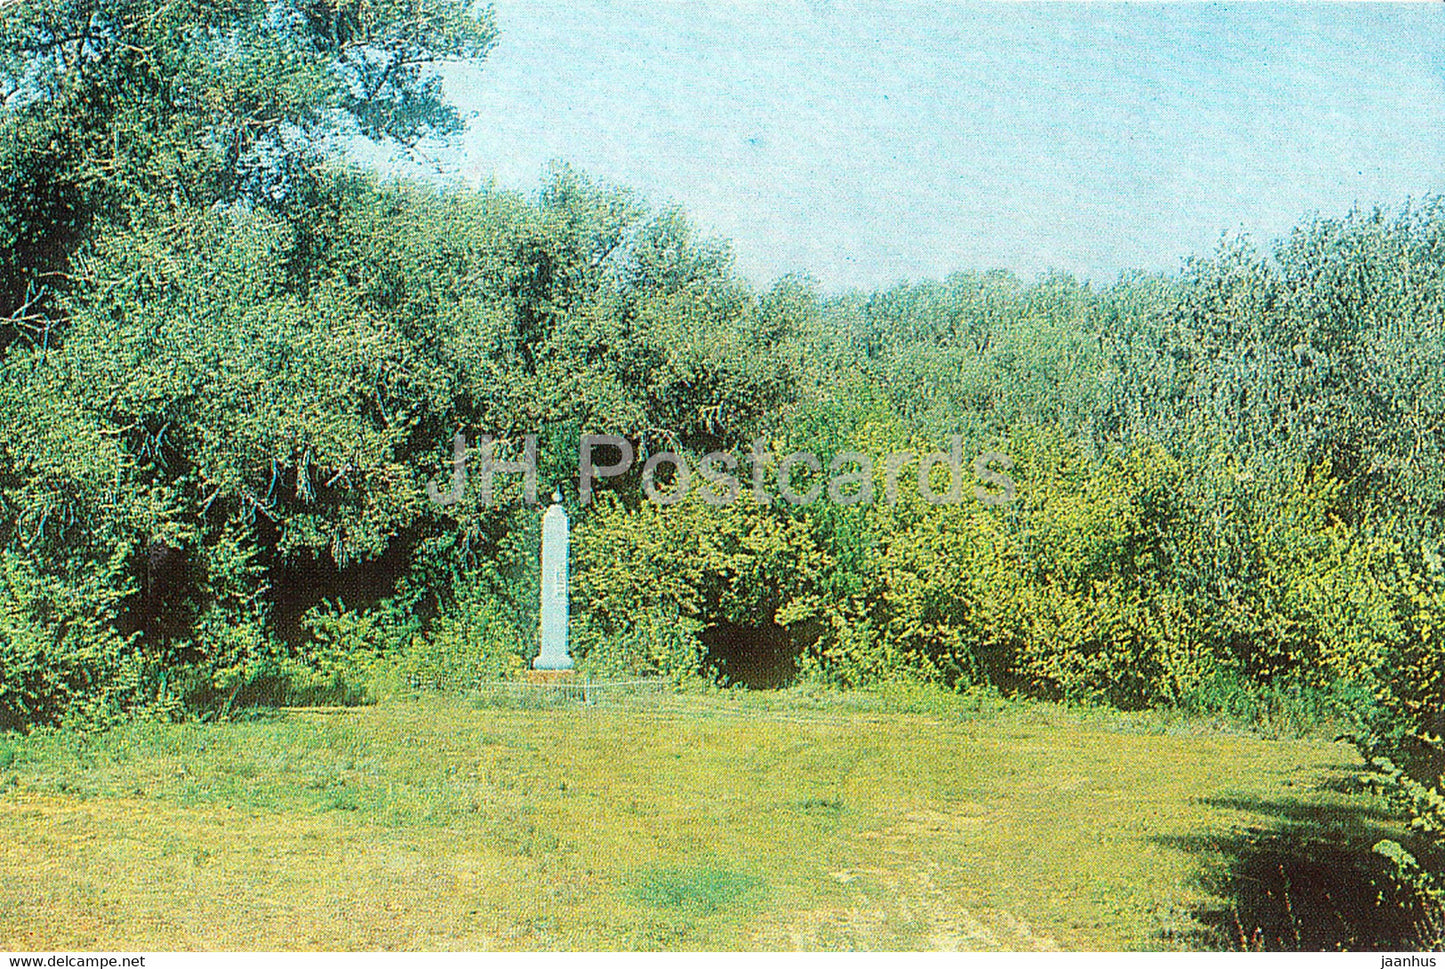 Uralsk - Oral - Gorky grove - 1984 - Kazakhstan USSR - unused - JH Postcards